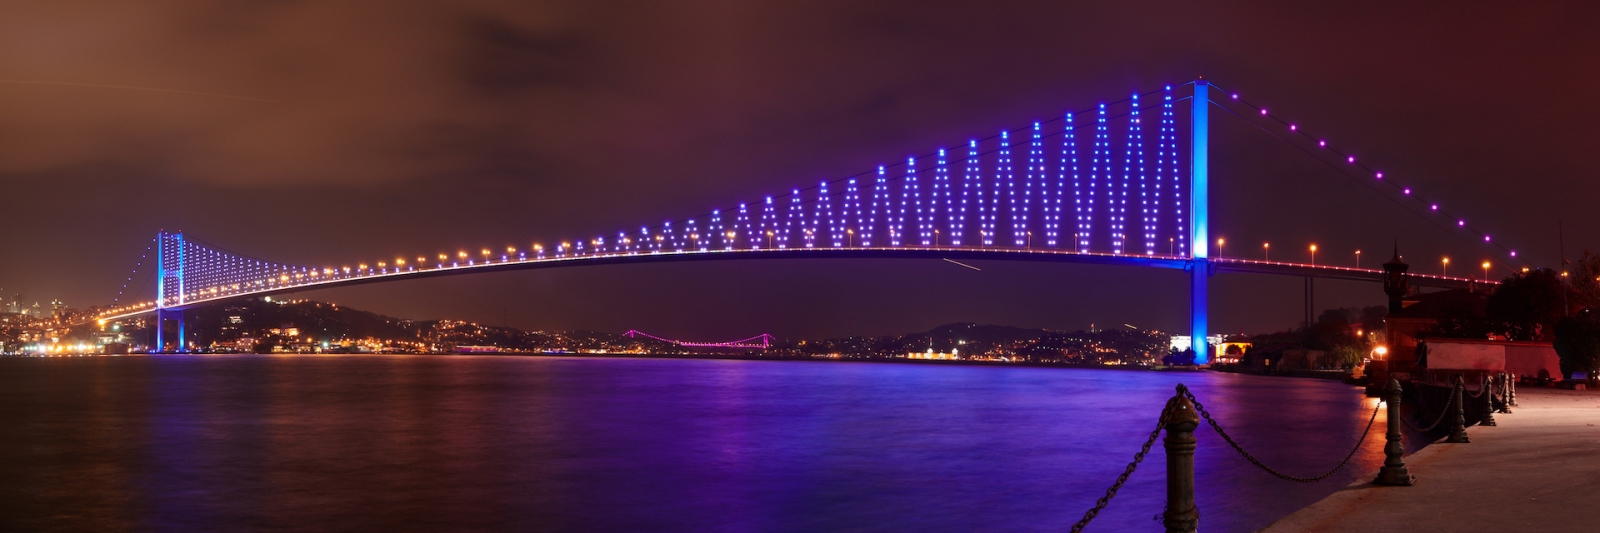 Beleuchtung der Bosporus-Brücke bei Nacht in Istanbul